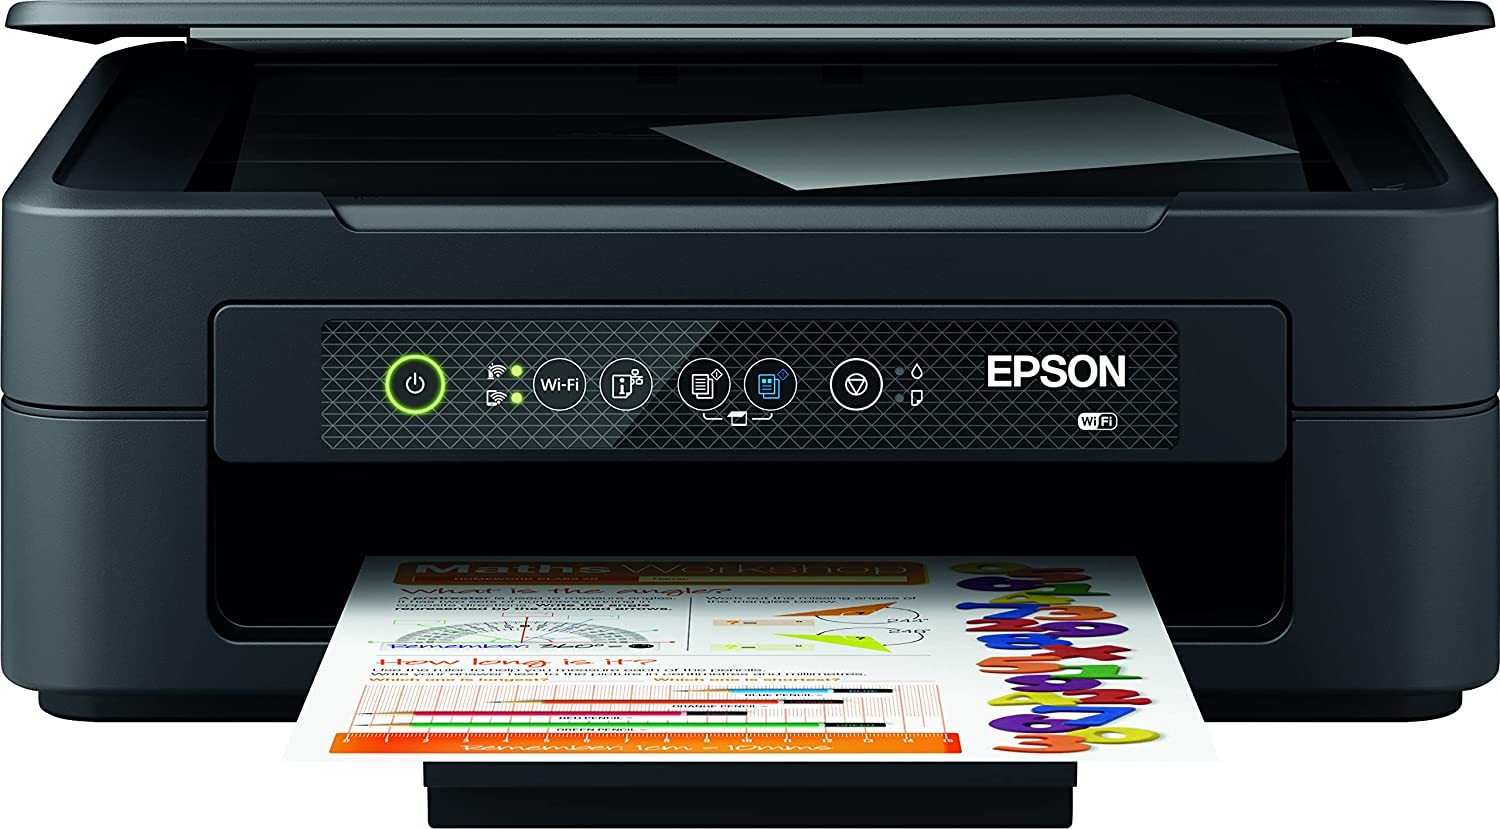 Epson Expression Home XP-2200 Print/Scan/Copy Wi-Fi Colour Printer